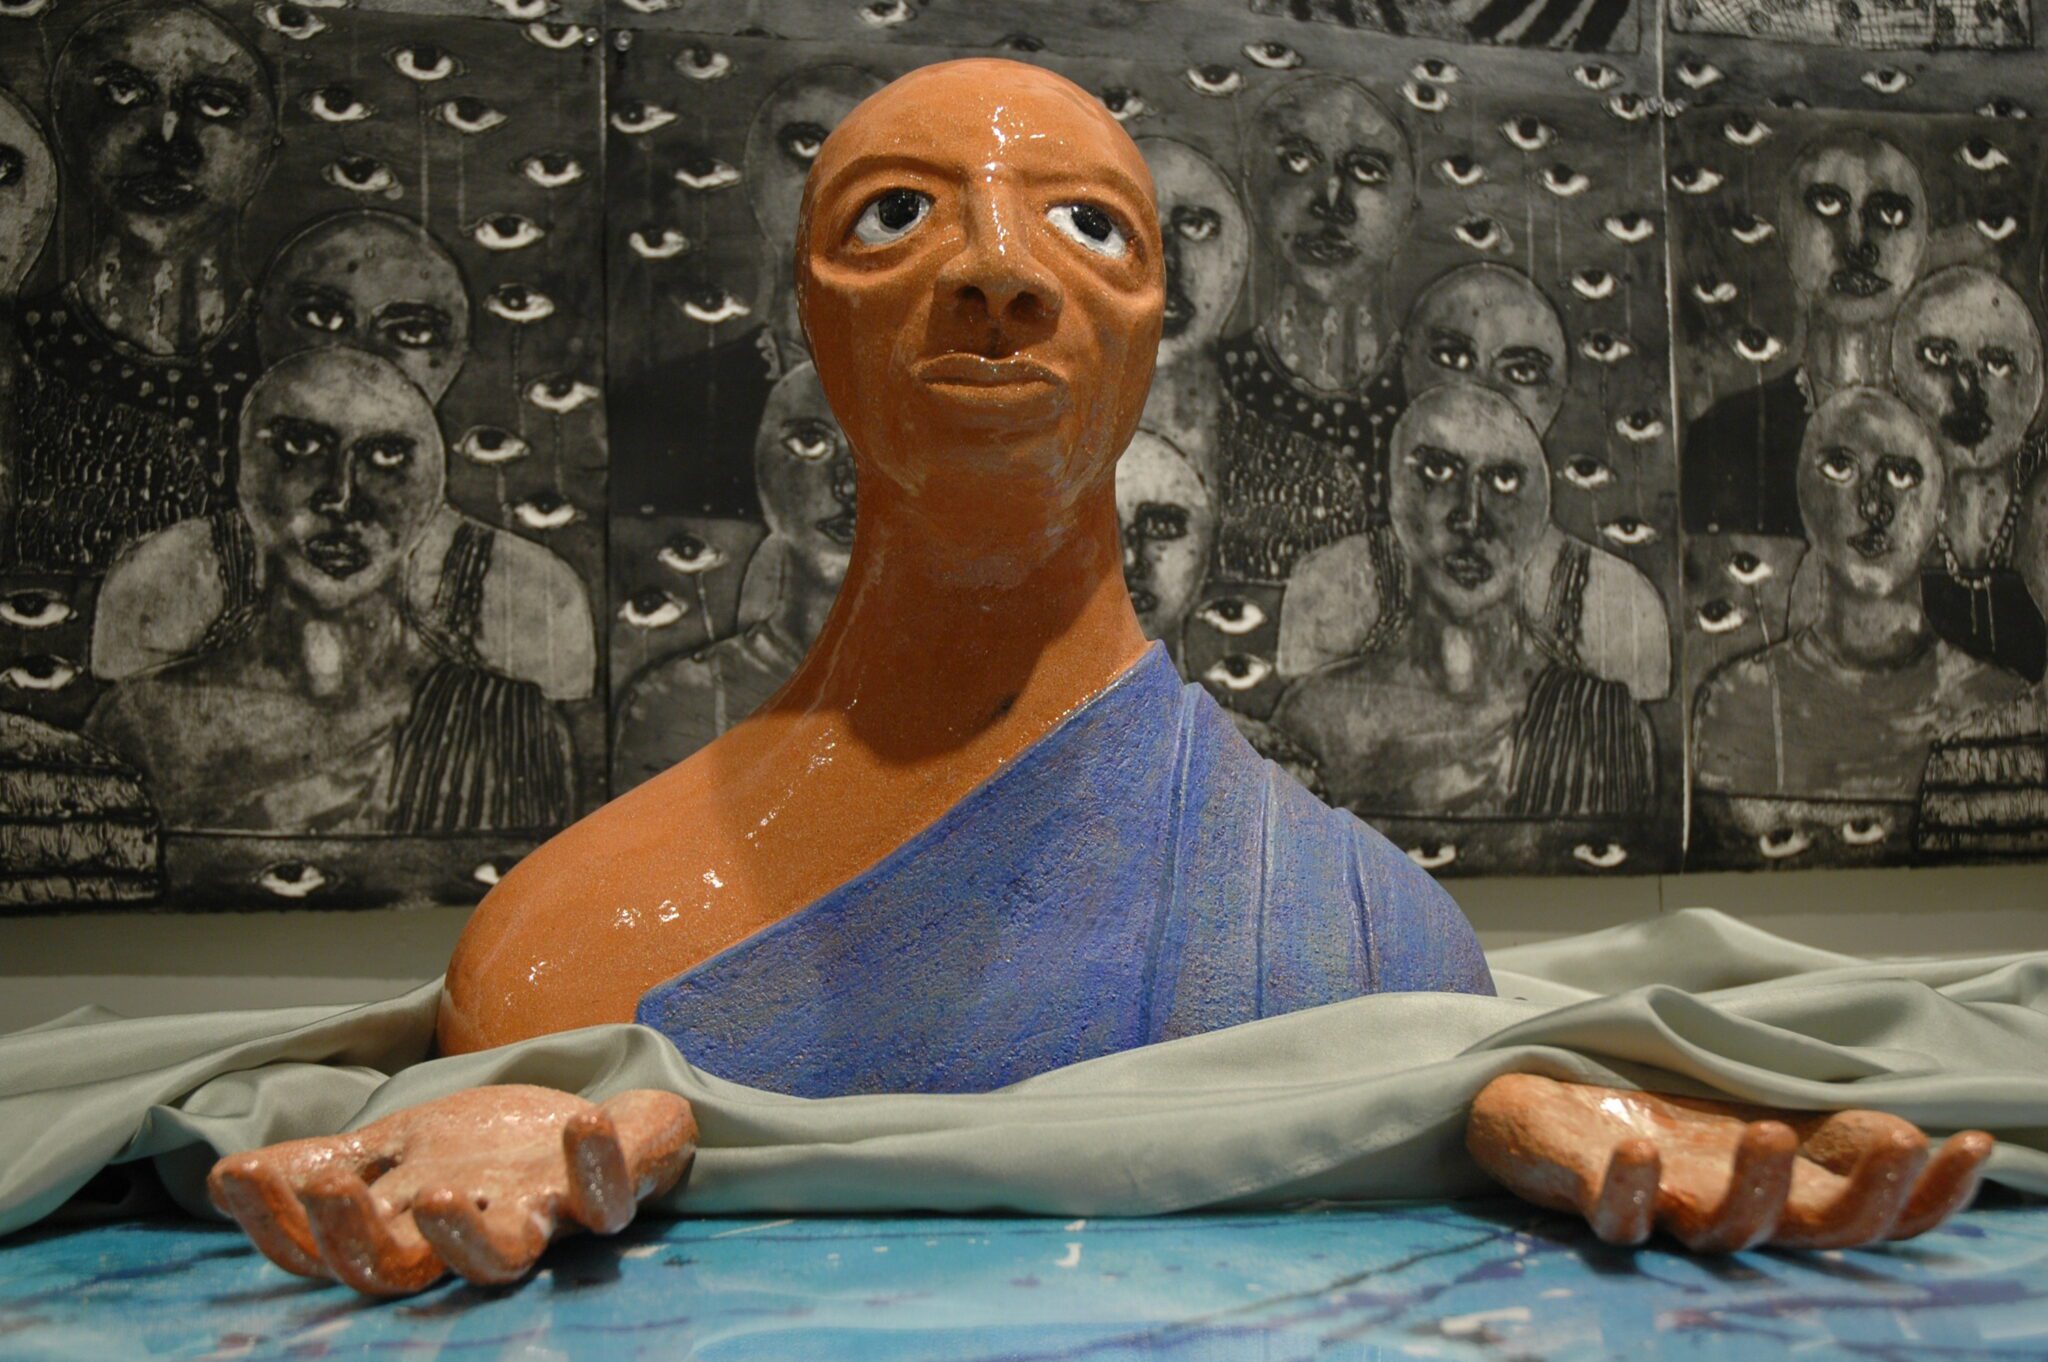 Ancestors of the passage a healing journey through the middle passage, installation, detalle de busto de cerámica